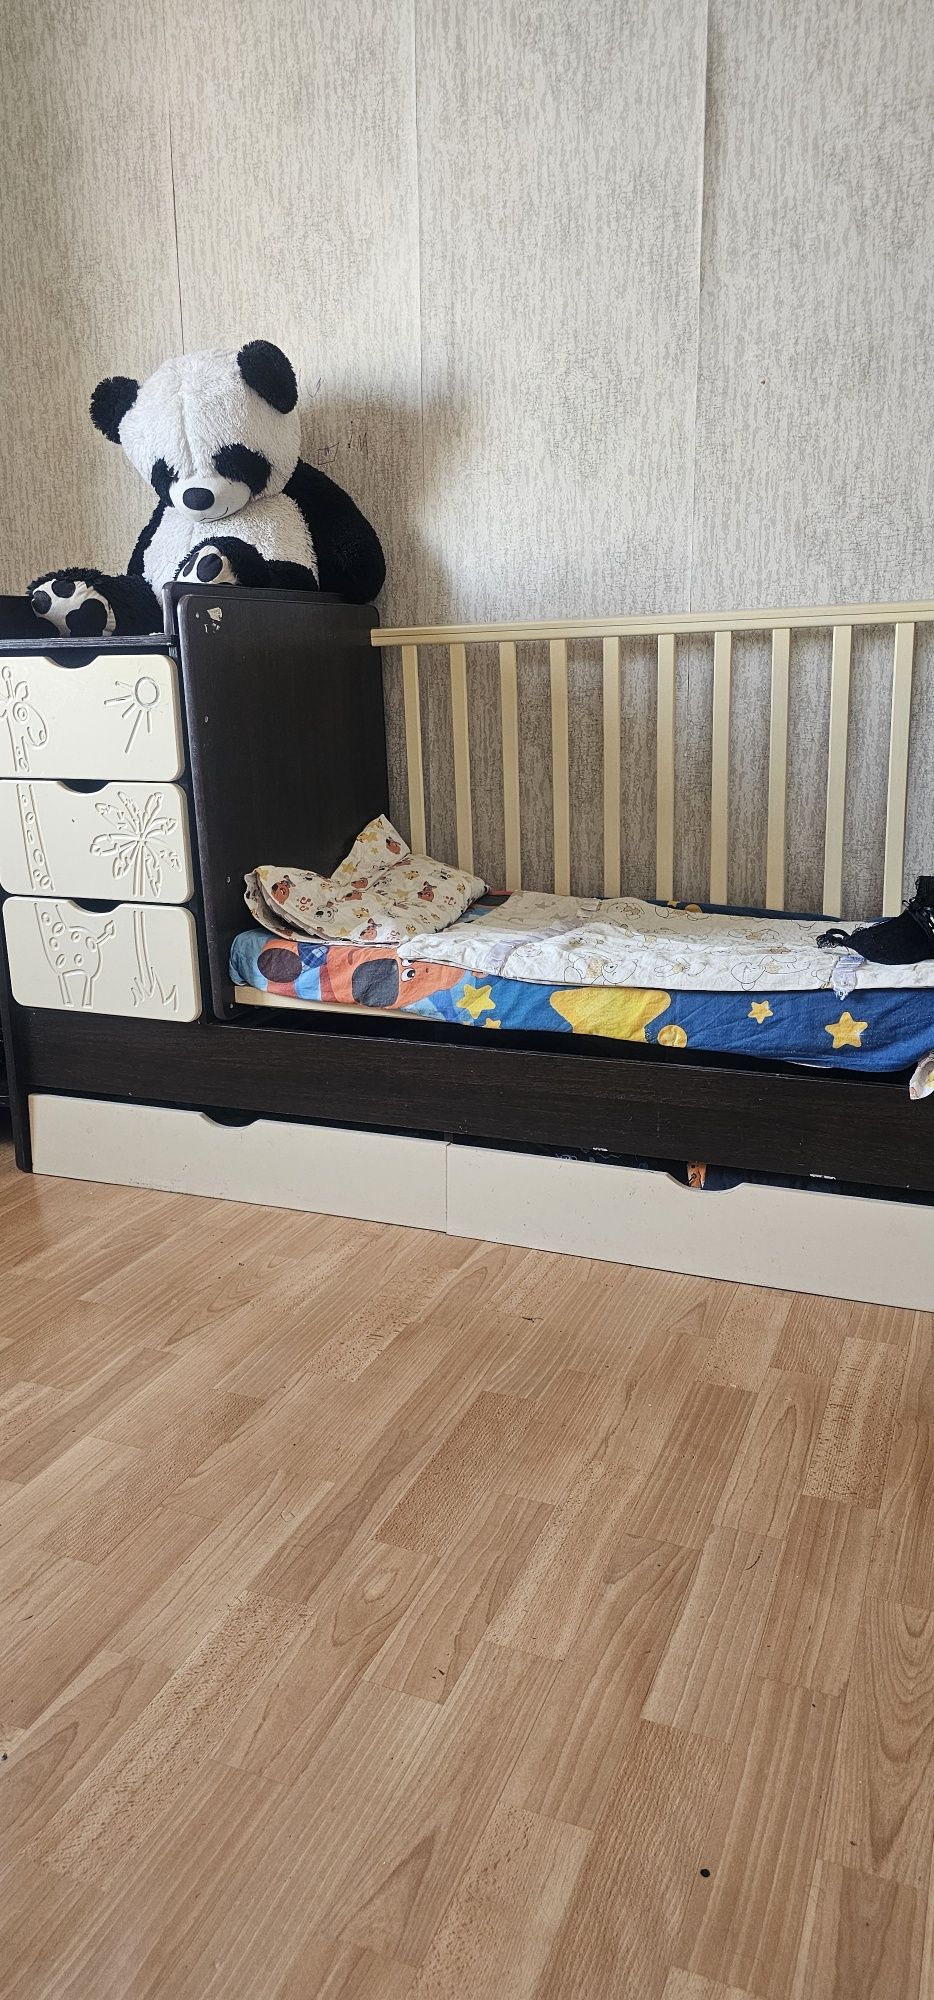 АСТАНА дешево детская кроватка